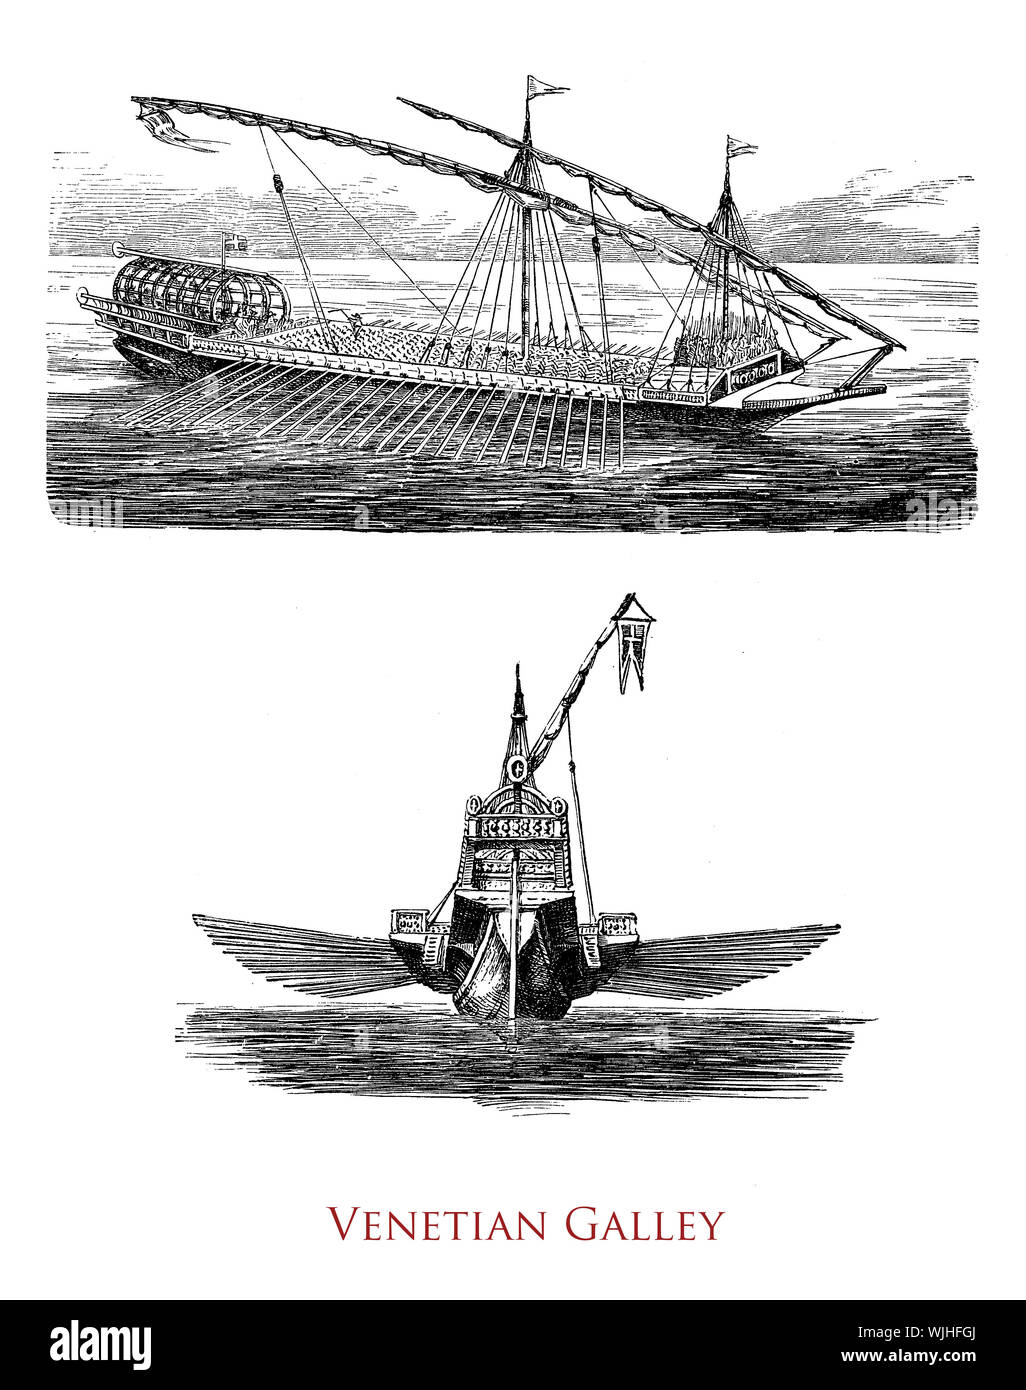 La cuisine vénitienne est le navire de la République vénitienne dérivée de la trirème romaine utilisé comme navire de guerre et pour les cargaisons de grande valeur Banque D'Images